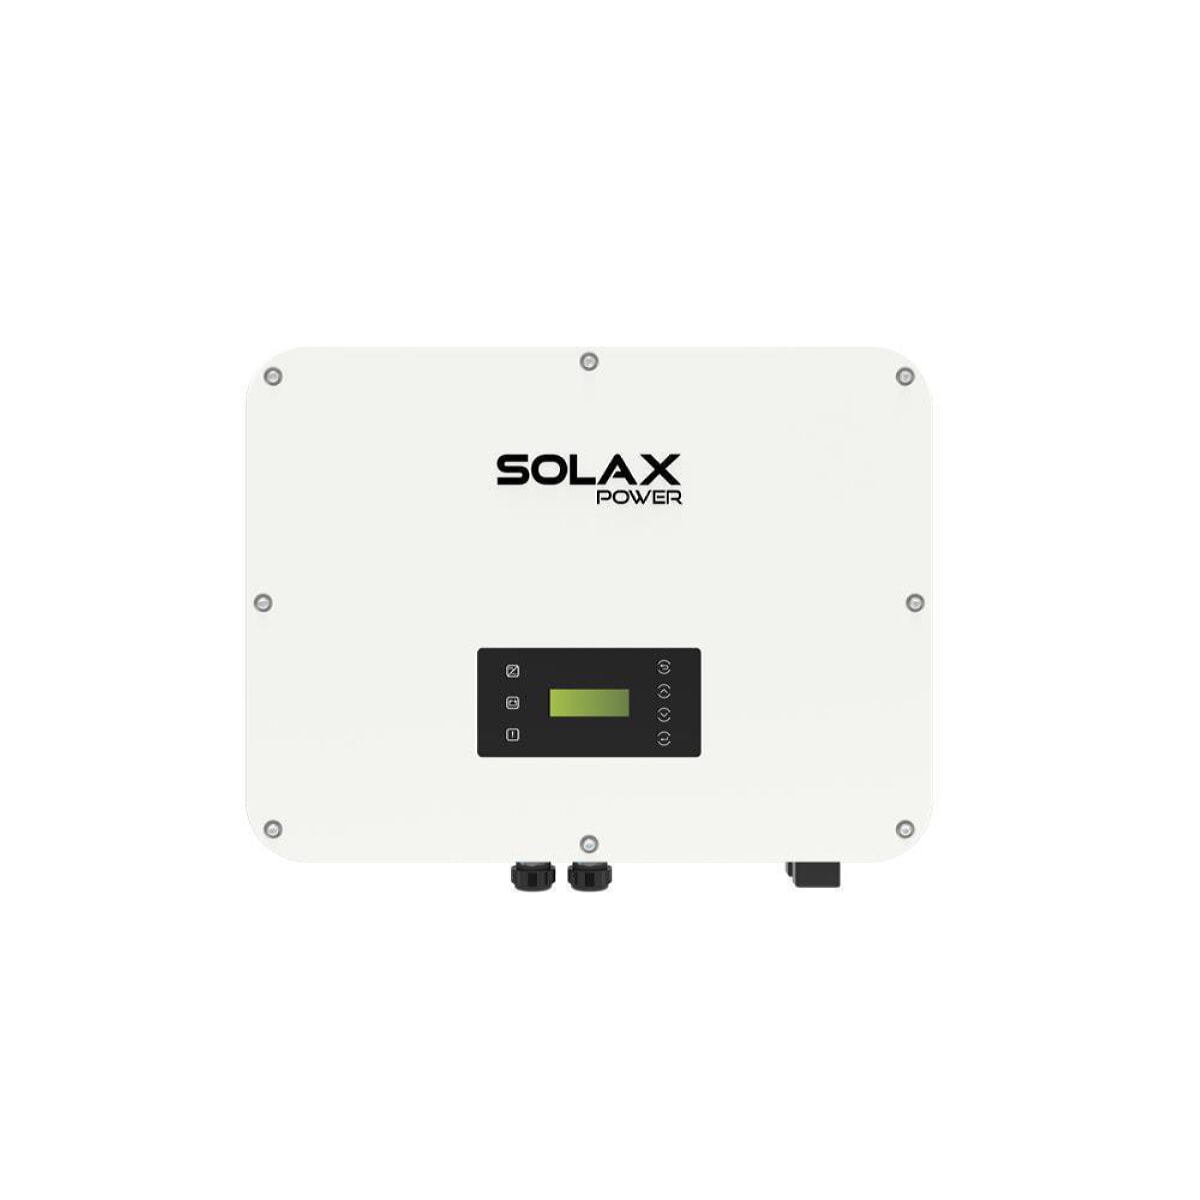 SolaX X3 Ultra 30K three-phase hybrid inverter